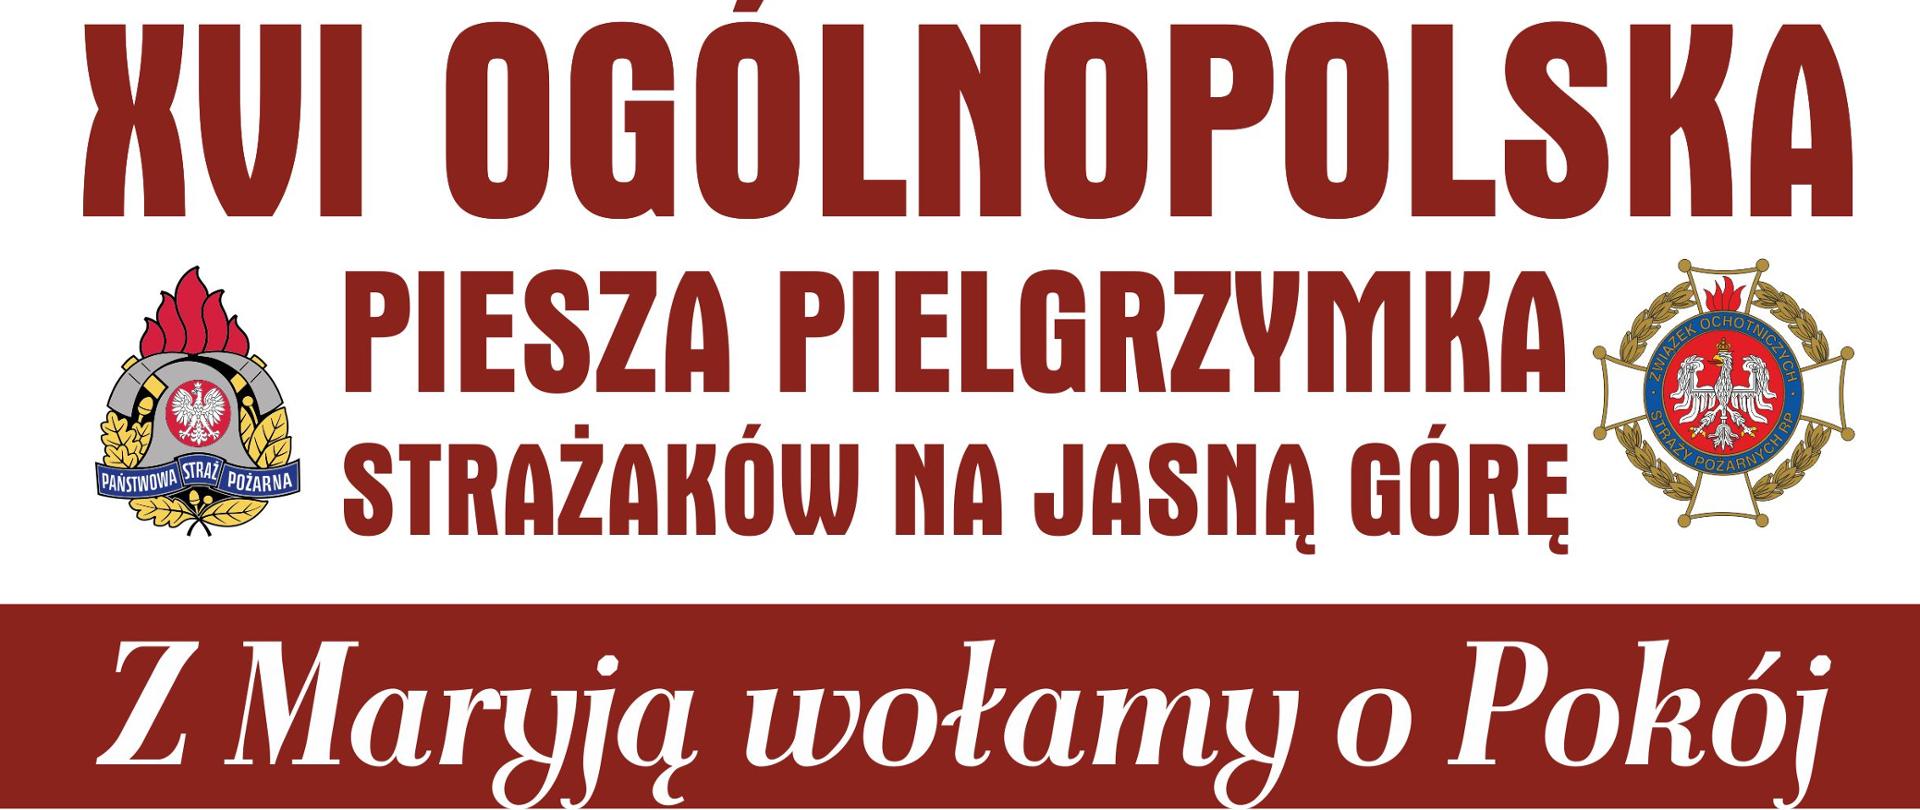 Plakat promujący XVI Ogólnopolską Pieszą Pielgrzymkę Strażaków na Jasną Górę 5-14 sierpnia 2022 r. Na plakacie umieszczona grafika z trasą pielgrzymki oraz dane kontaktowe do osób odpowiedzialnych za organizację.